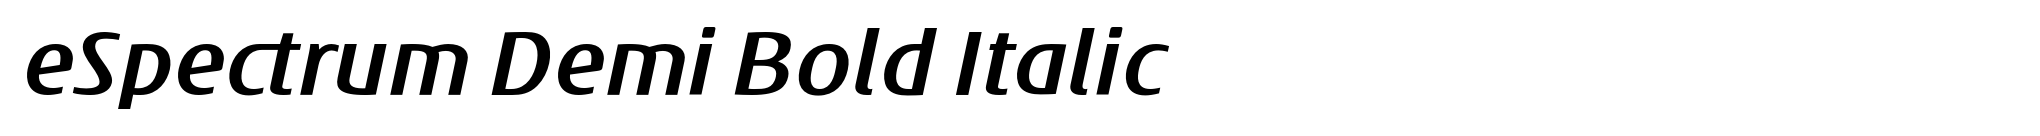 eSpectrum Demi Bold Italic image